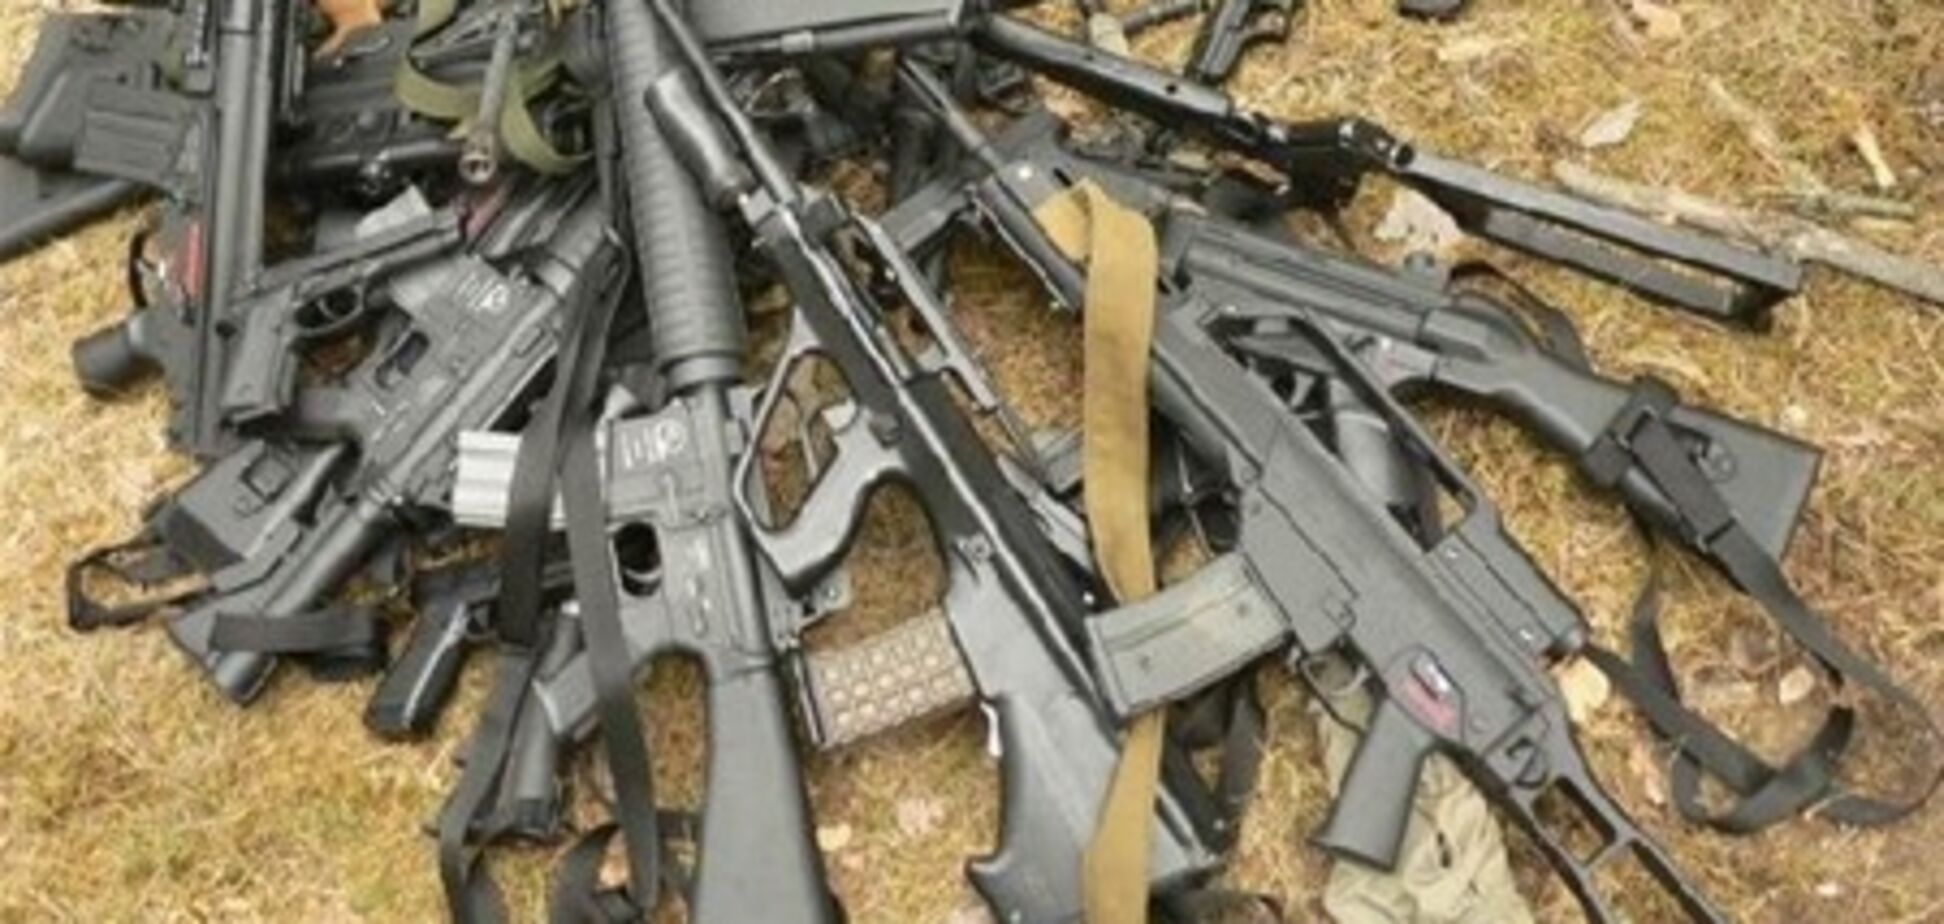 У Чернівецькій області затримали торговців зброєю, 17 травня 2013